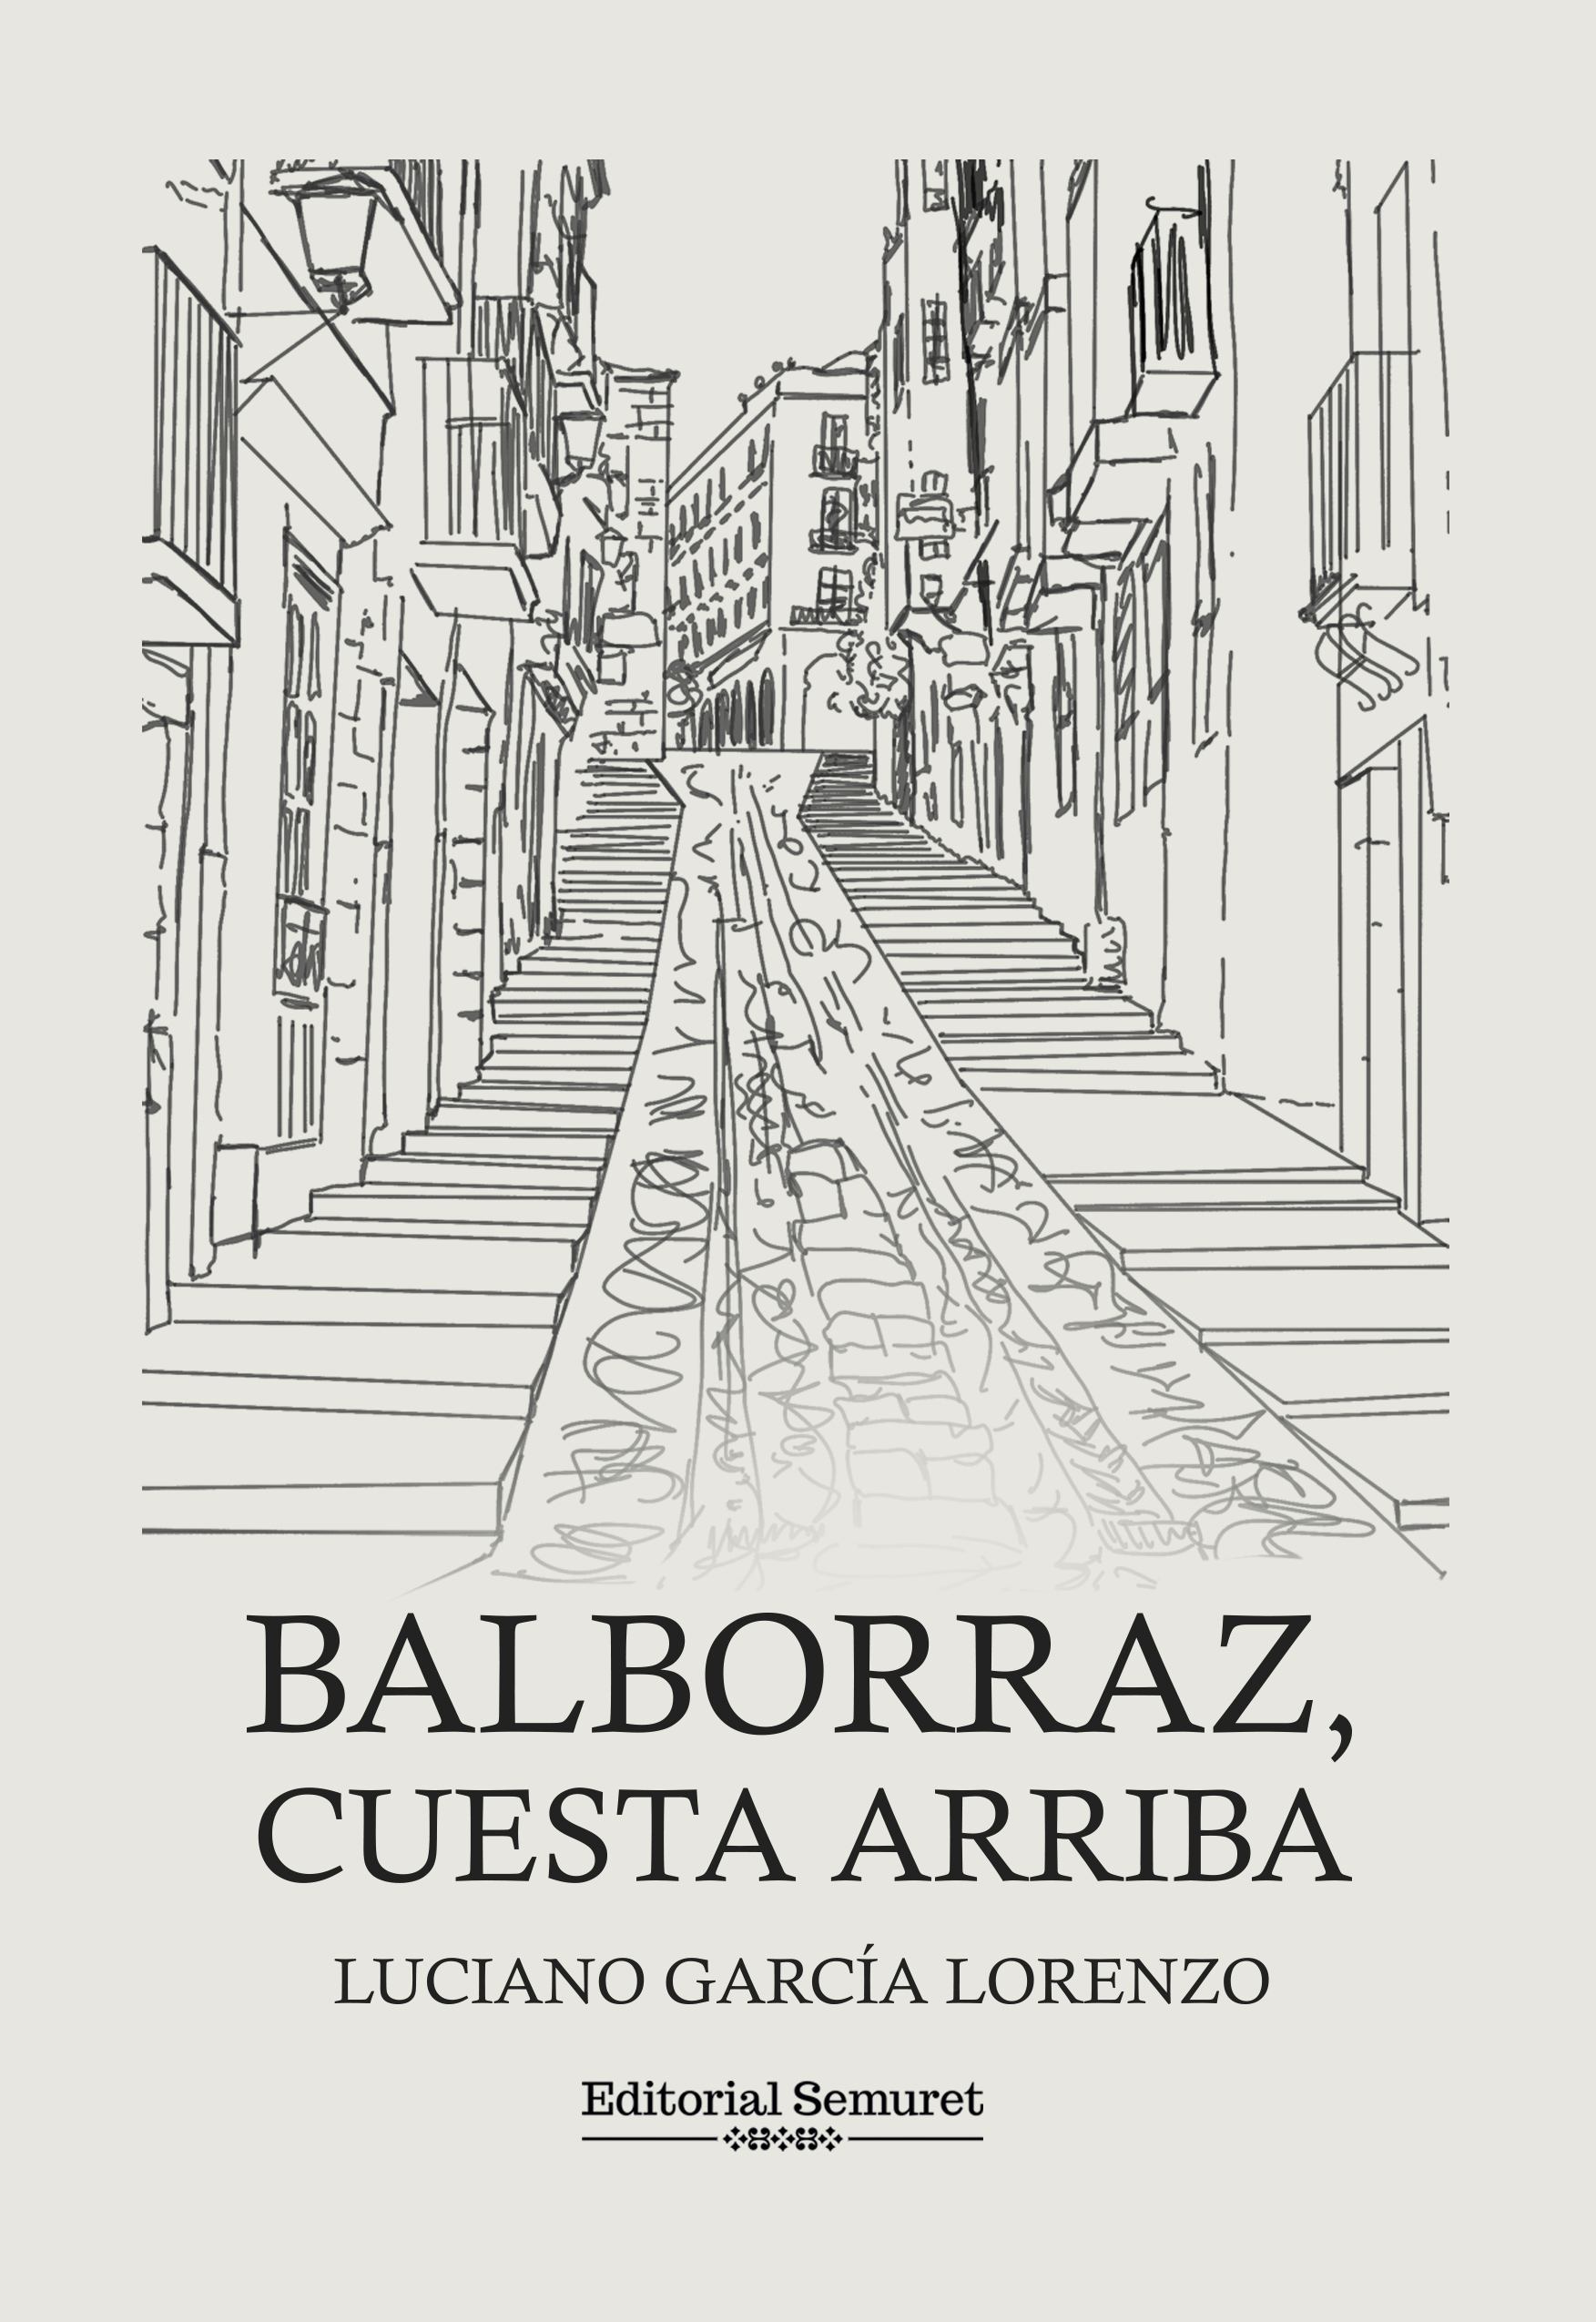 presentación del libro Balborraz, cuesta arriba. Agenda cultural. Zamora inquieta